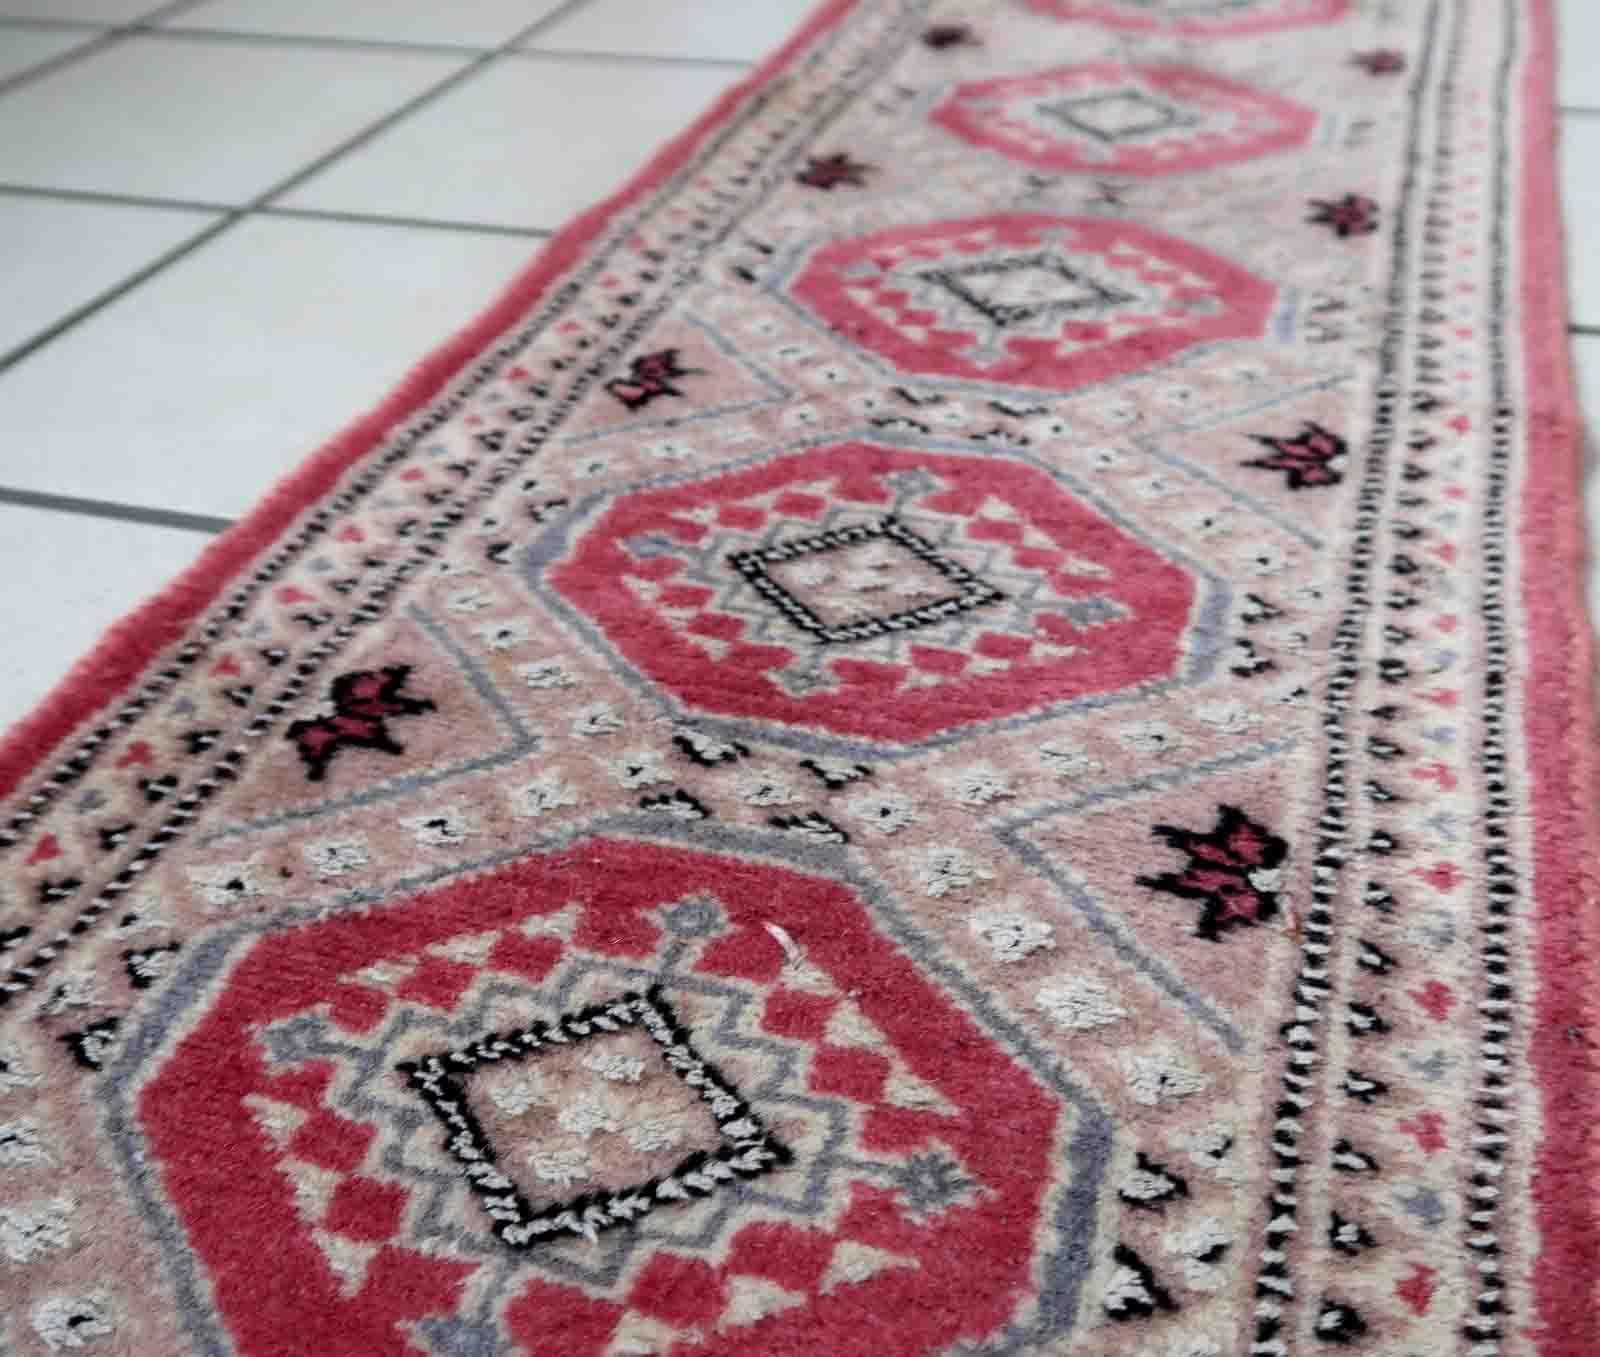 Usbekische Buchara-Matte im Vintage-Stil in hellen Farbtönen. Der Teppich stammt aus dem Ende des 20. Jahrhunderts und ist aus Wolle mit Seidenanteil. Der Teppich ist in einem guten Originalzustand.

-zustand: original gut,

-etwa: 1970er